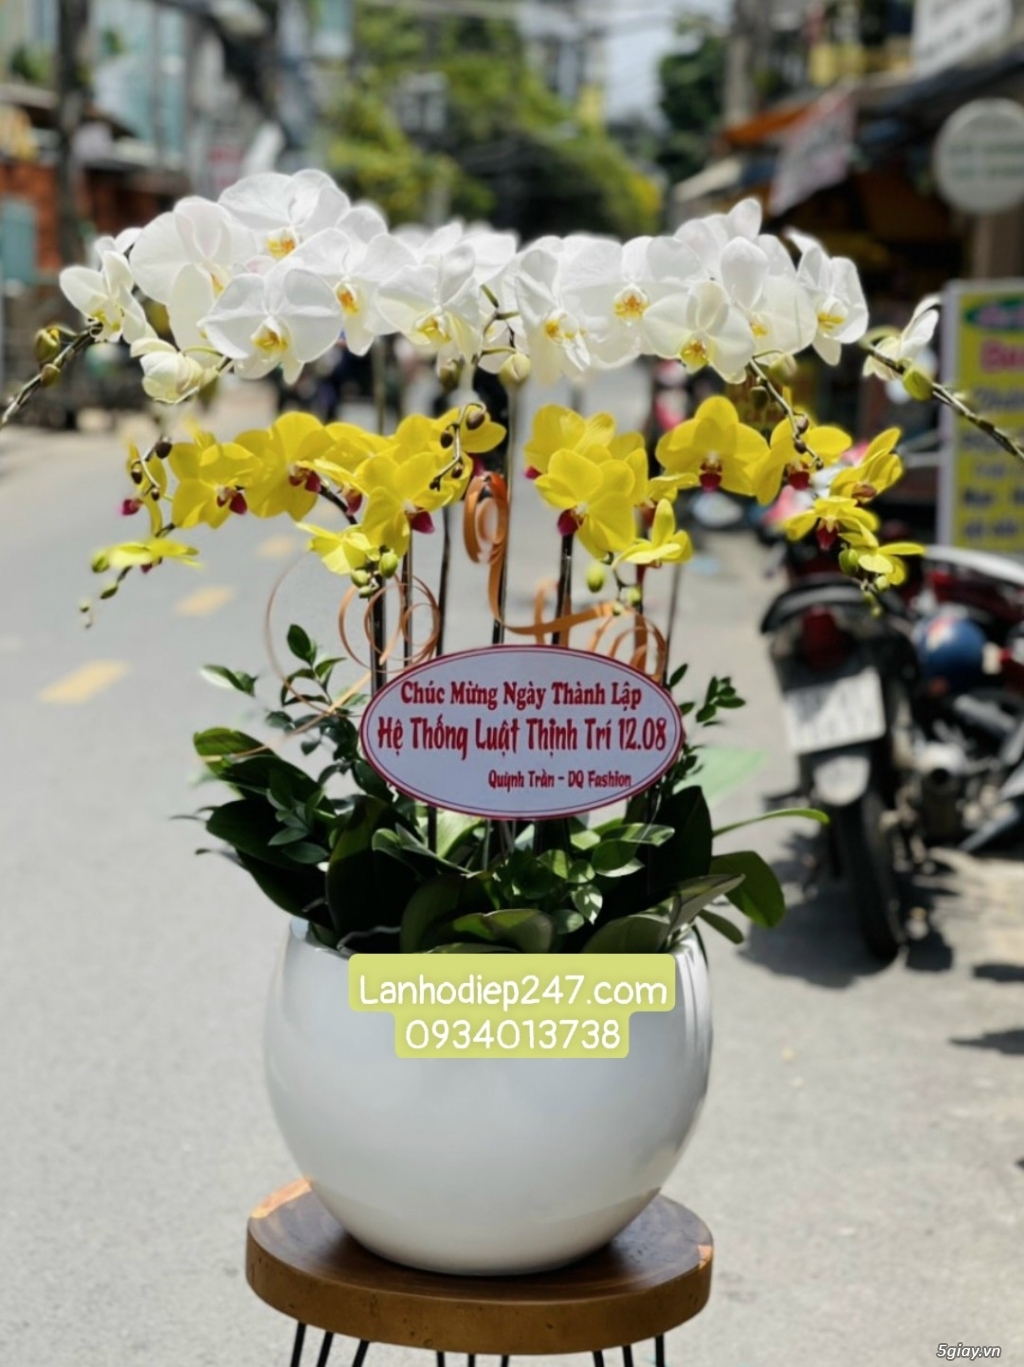 Mua Lan Hồ Điệp tại Sài Gòn, đặt hoa onine giao hàng miễn phí tại nơi - 11